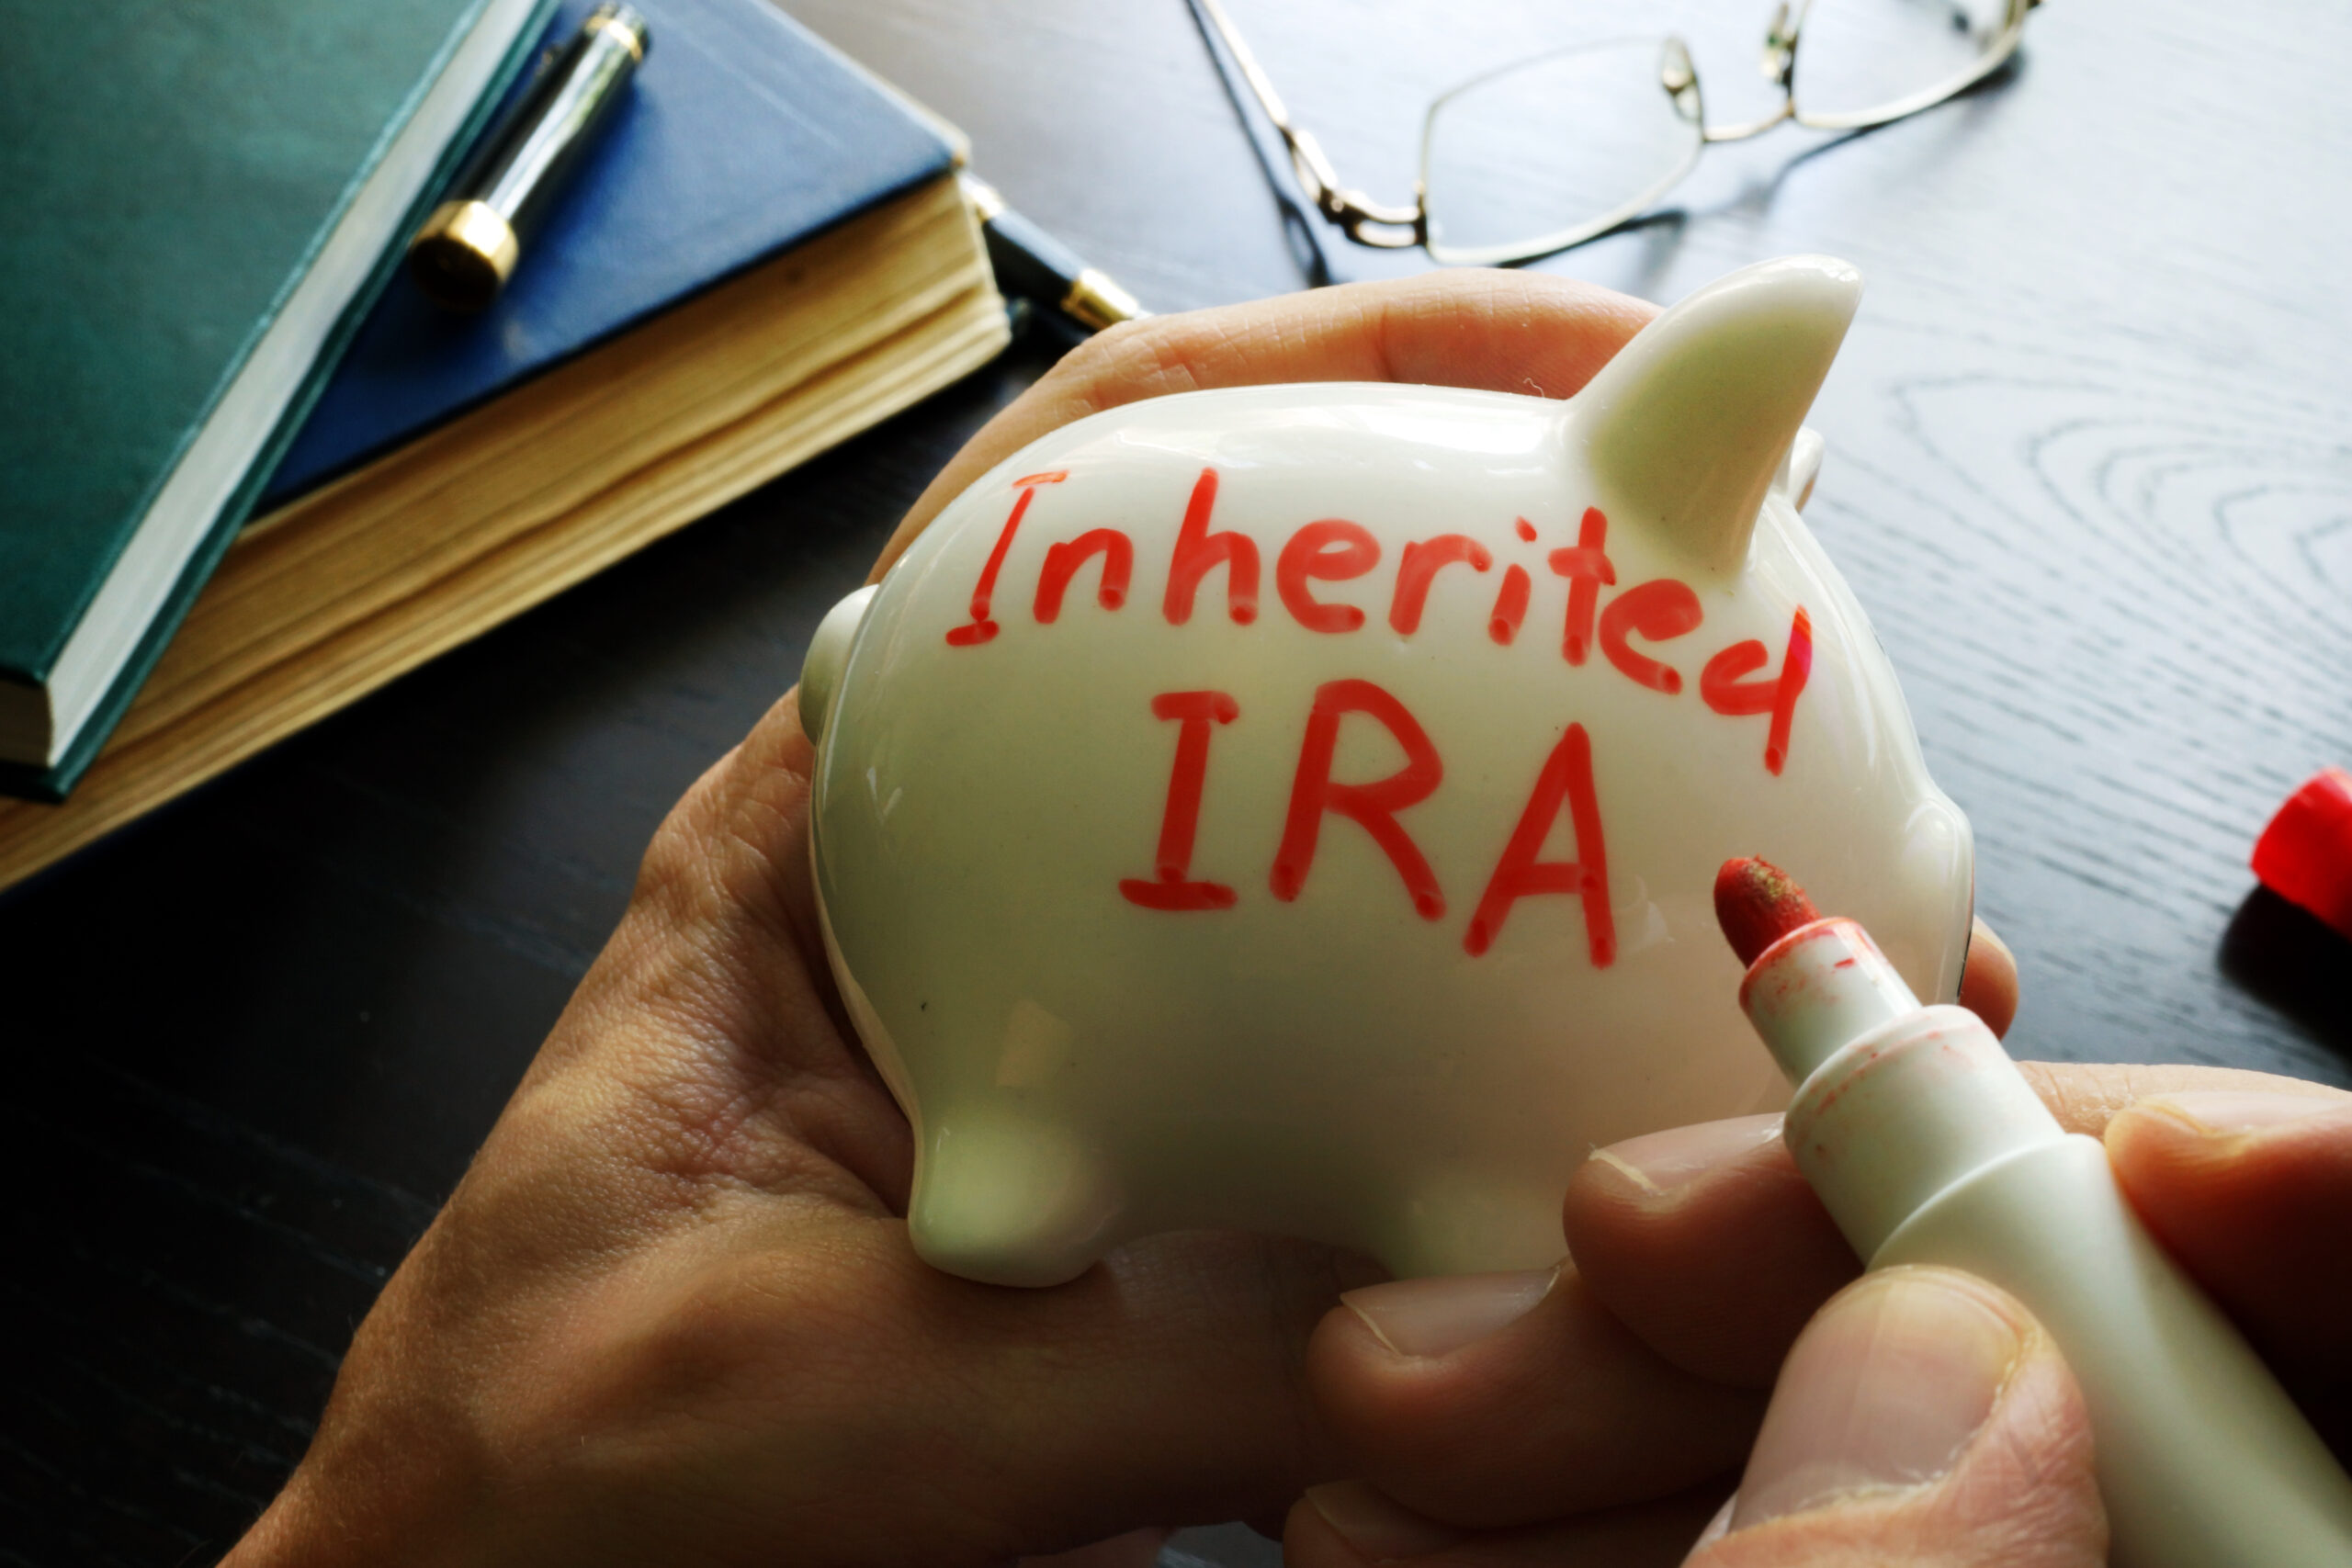 Inherited,Ira,Written,On,A,Piggy,Bank.